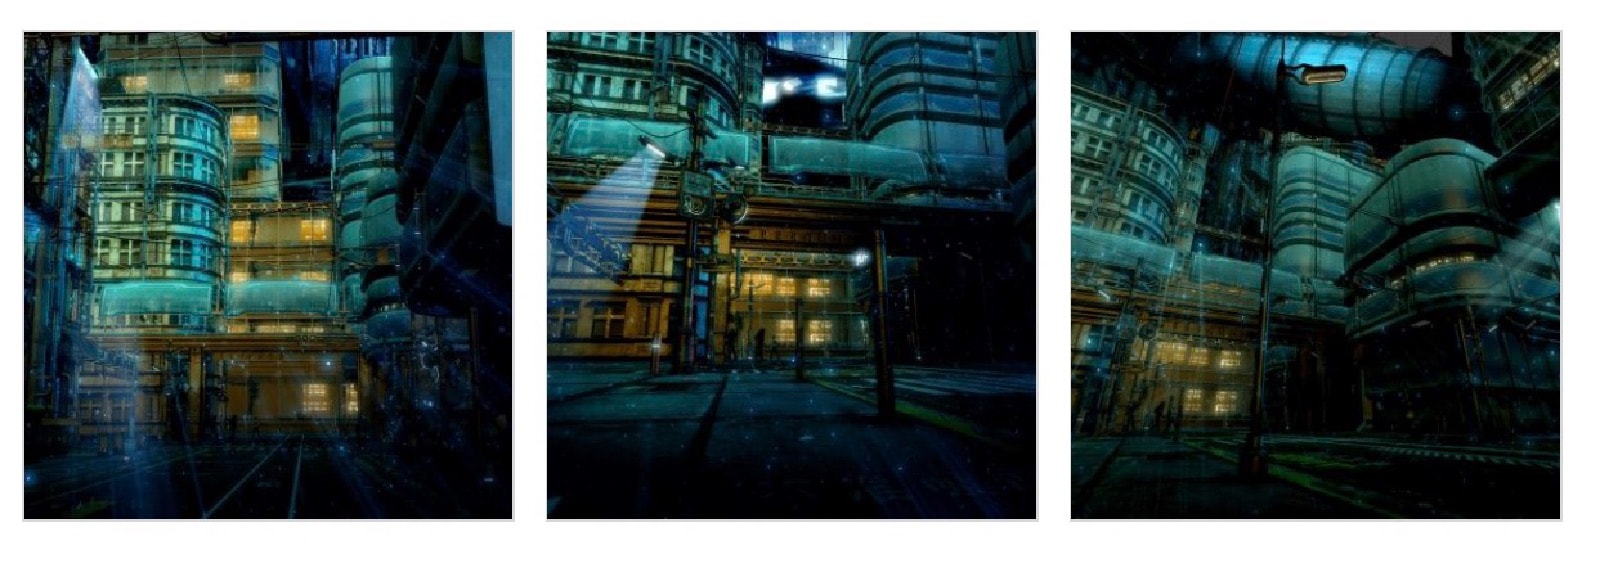 背景素材】サイバーパンクの世界観と街の外観の背景イラストを一部追加 